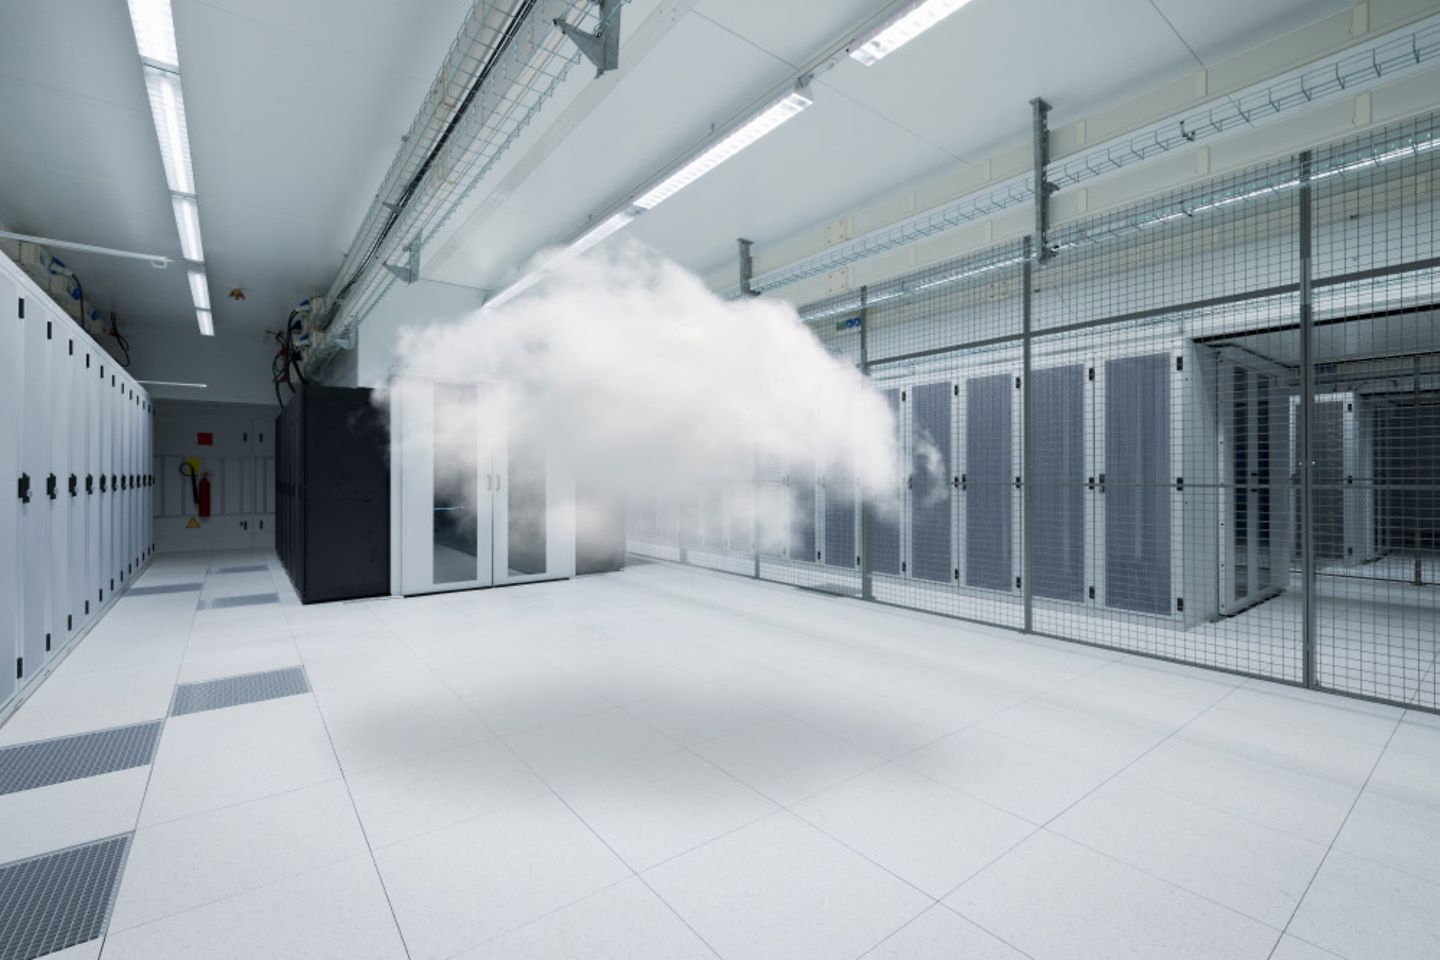 Serverruimte waarin een wolk zweeft